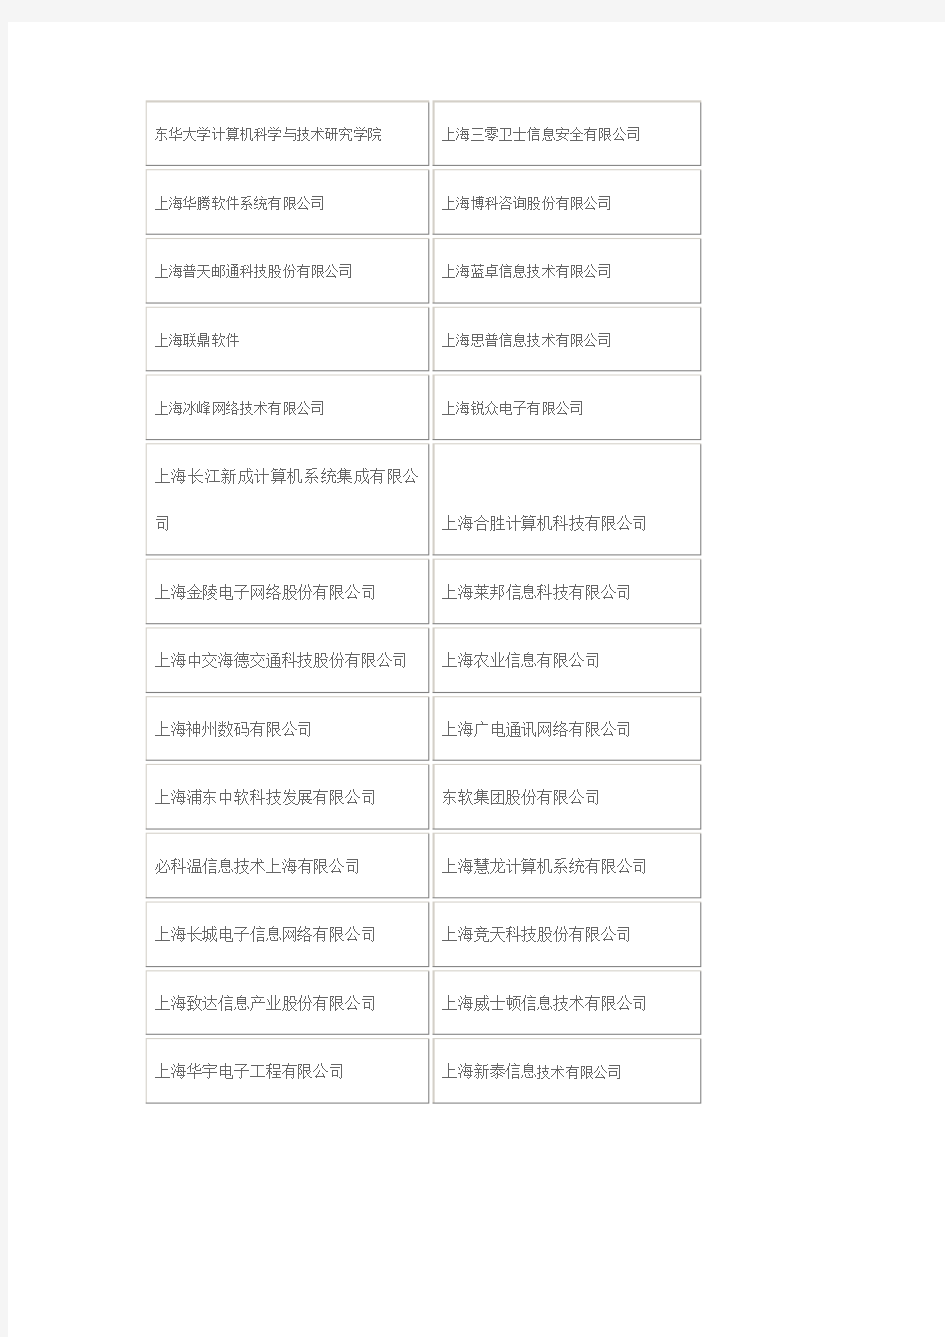 上海重点企业名单